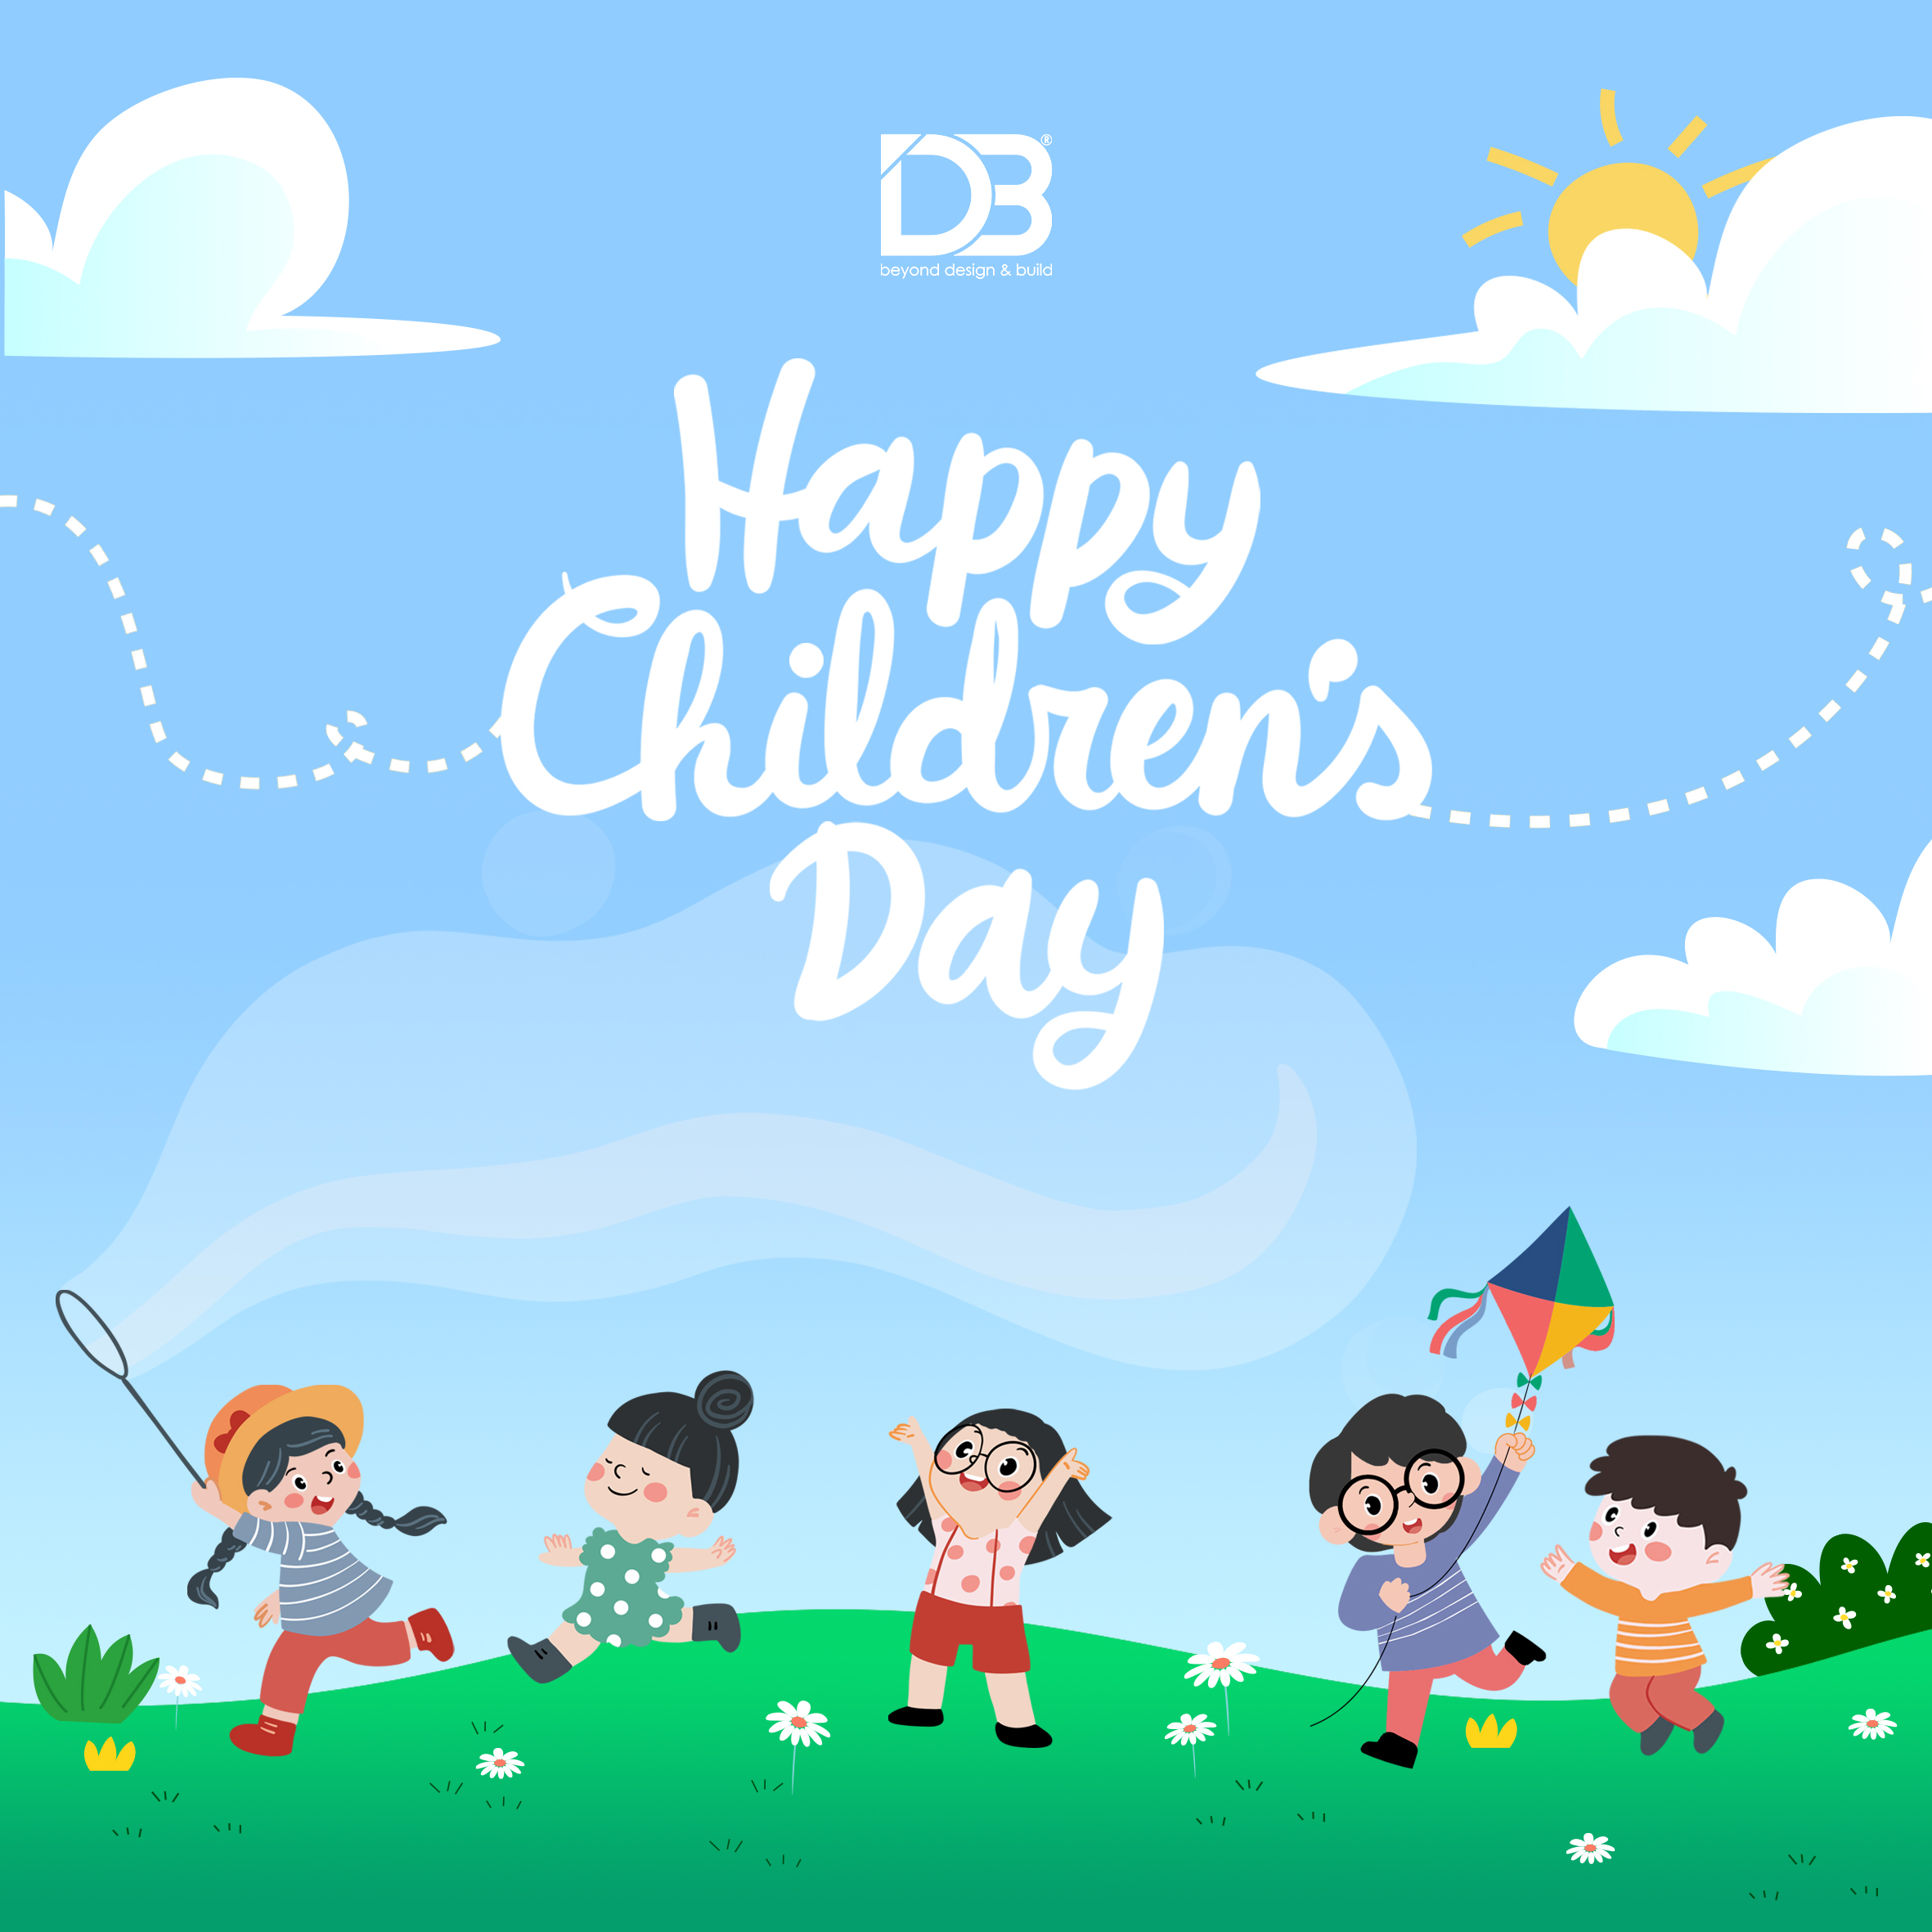 HAPPY CHILDREN’S DAY